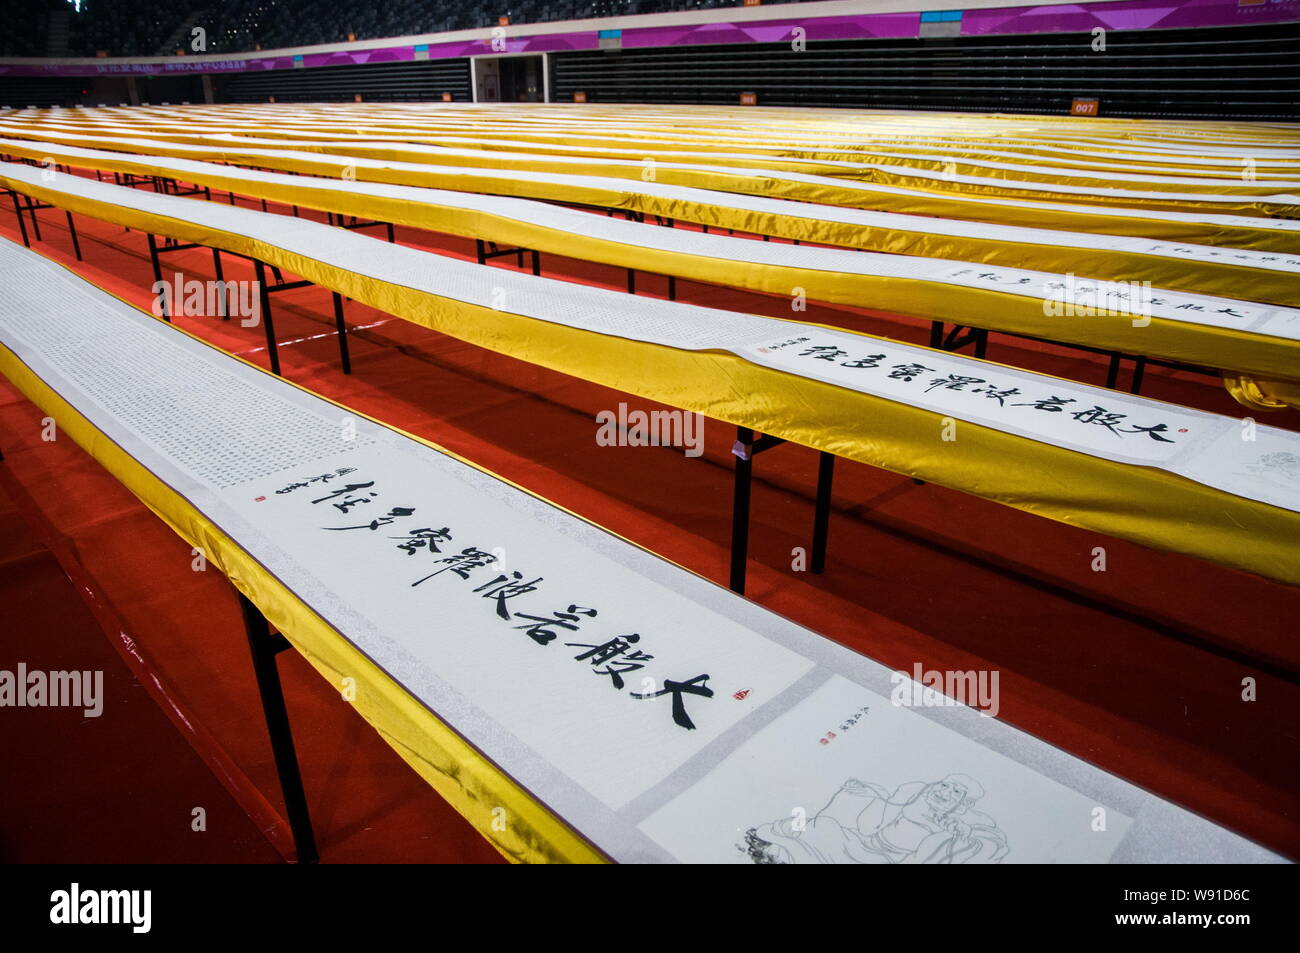 Les volutes des sutra bouddhiste écrit par résident chinois il Guojian s'affichent dans un gymnase de basket-ball dans la ville de Shenzhen, Guangdong, Chine du sud Banque D'Images